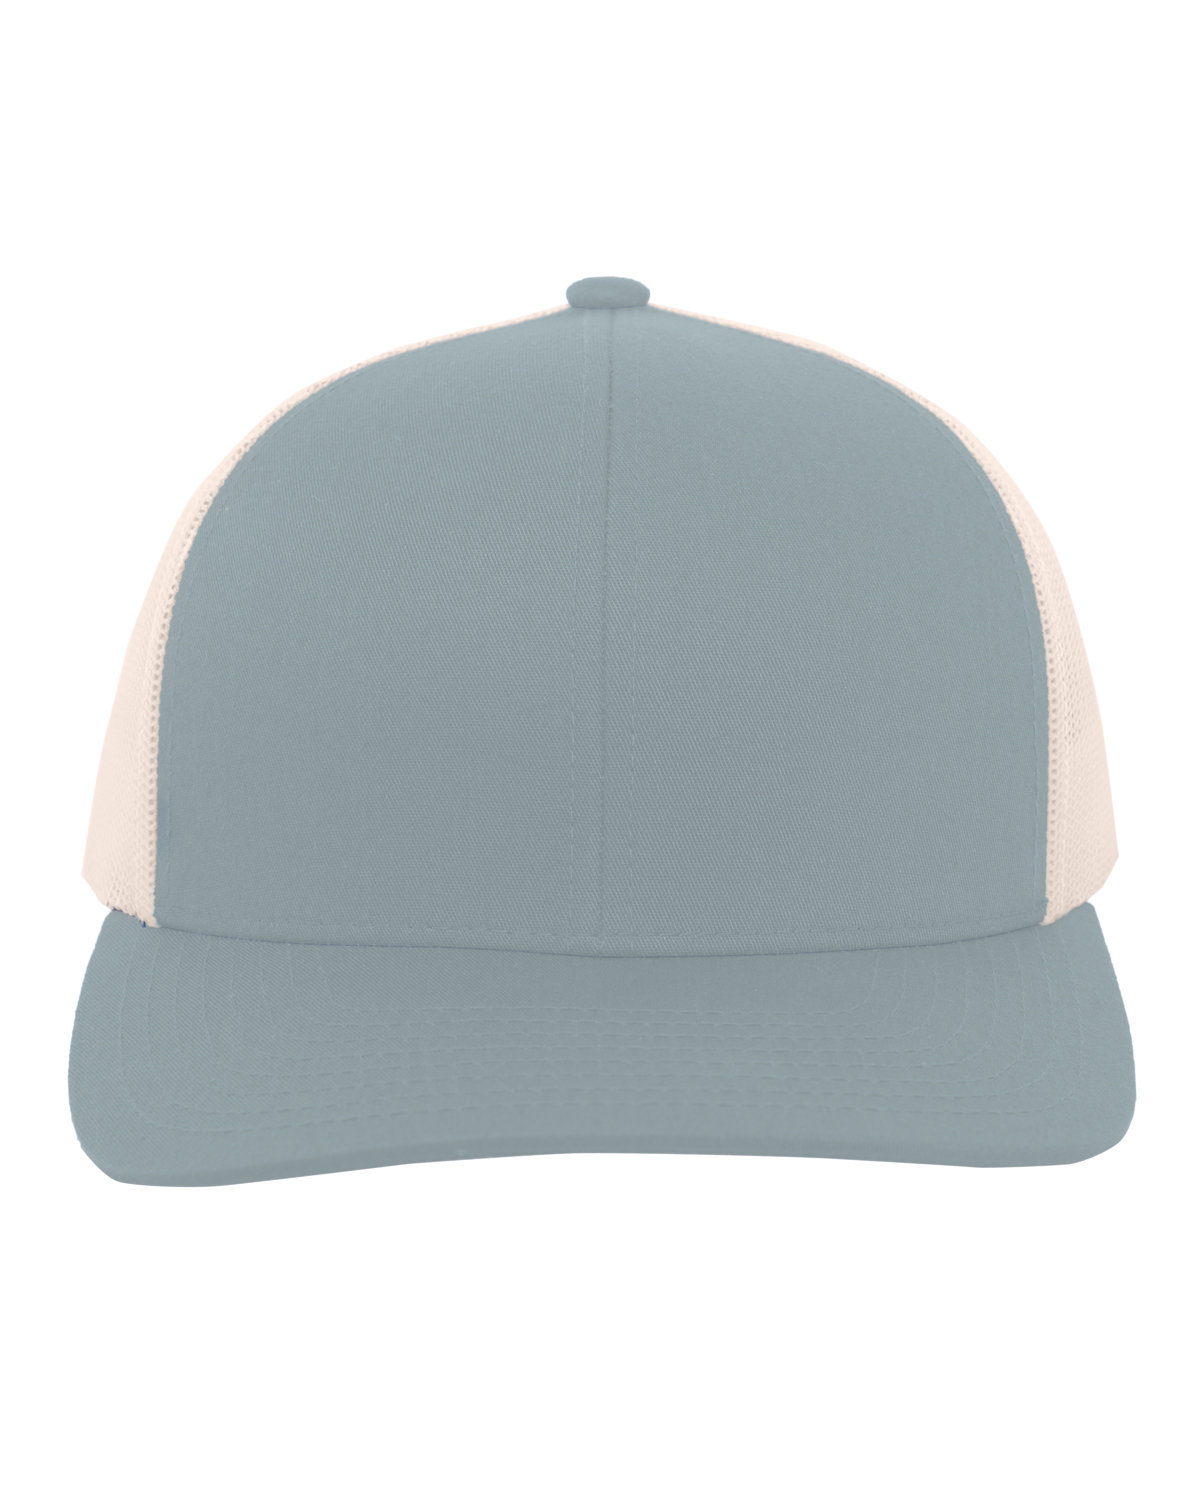 Pacific Headwear Trucker Snapback Hat SMOKE BLUE/ BGE 